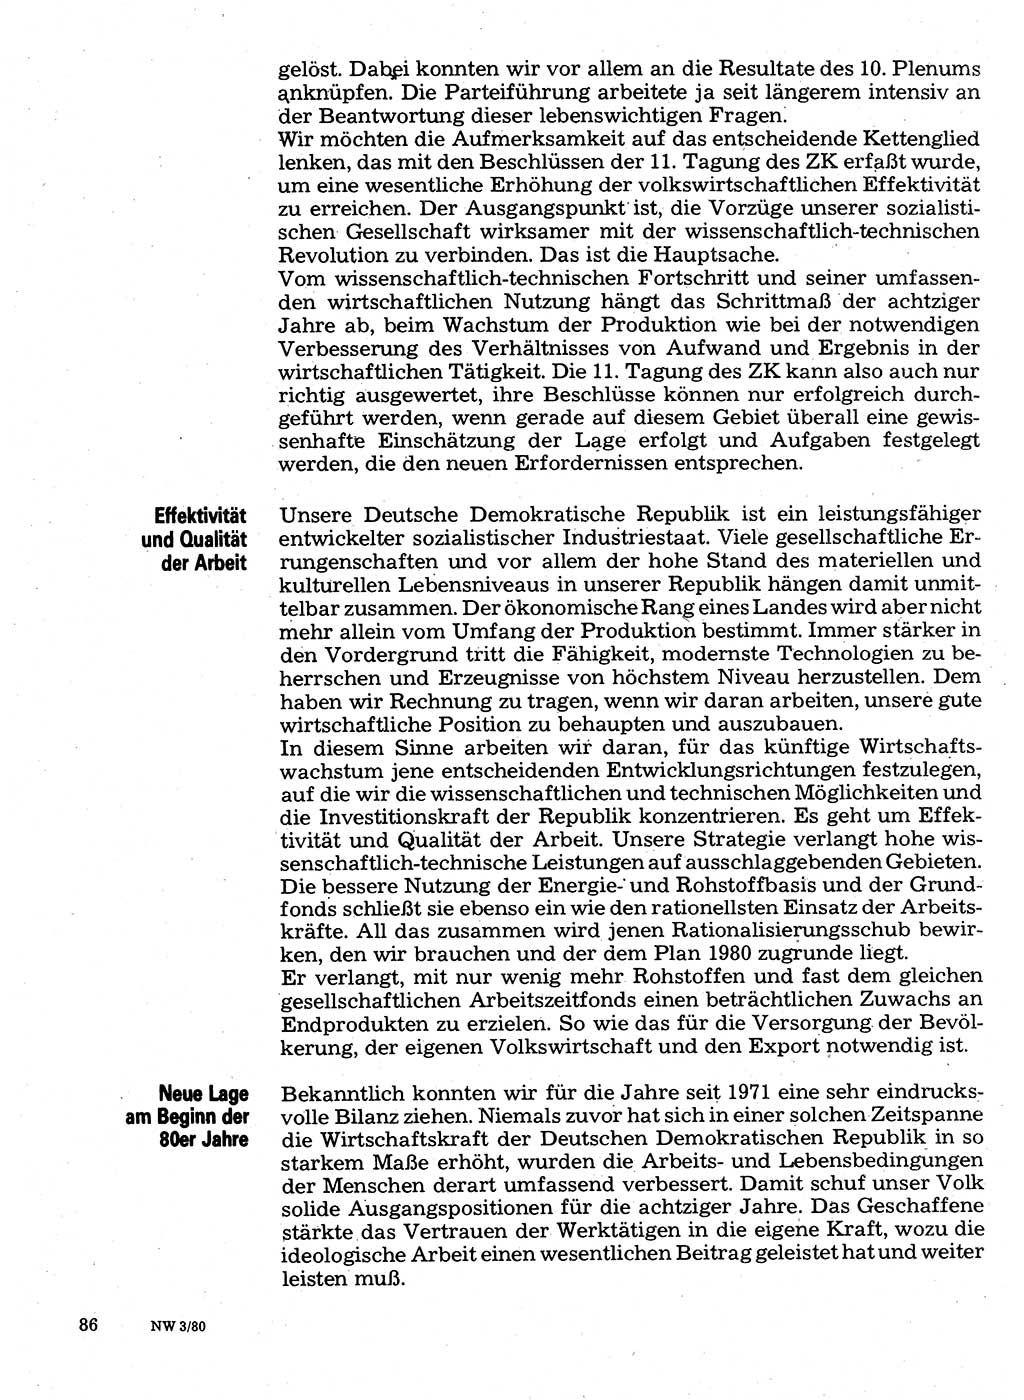 Neuer Weg (NW), Organ des Zentralkomitees (ZK) der SED (Sozialistische Einheitspartei Deutschlands) für Fragen des Parteilebens, 35. Jahrgang [Deutsche Demokratische Republik (DDR)] 1980, Seite 86 (NW ZK SED DDR 1980, S. 86)